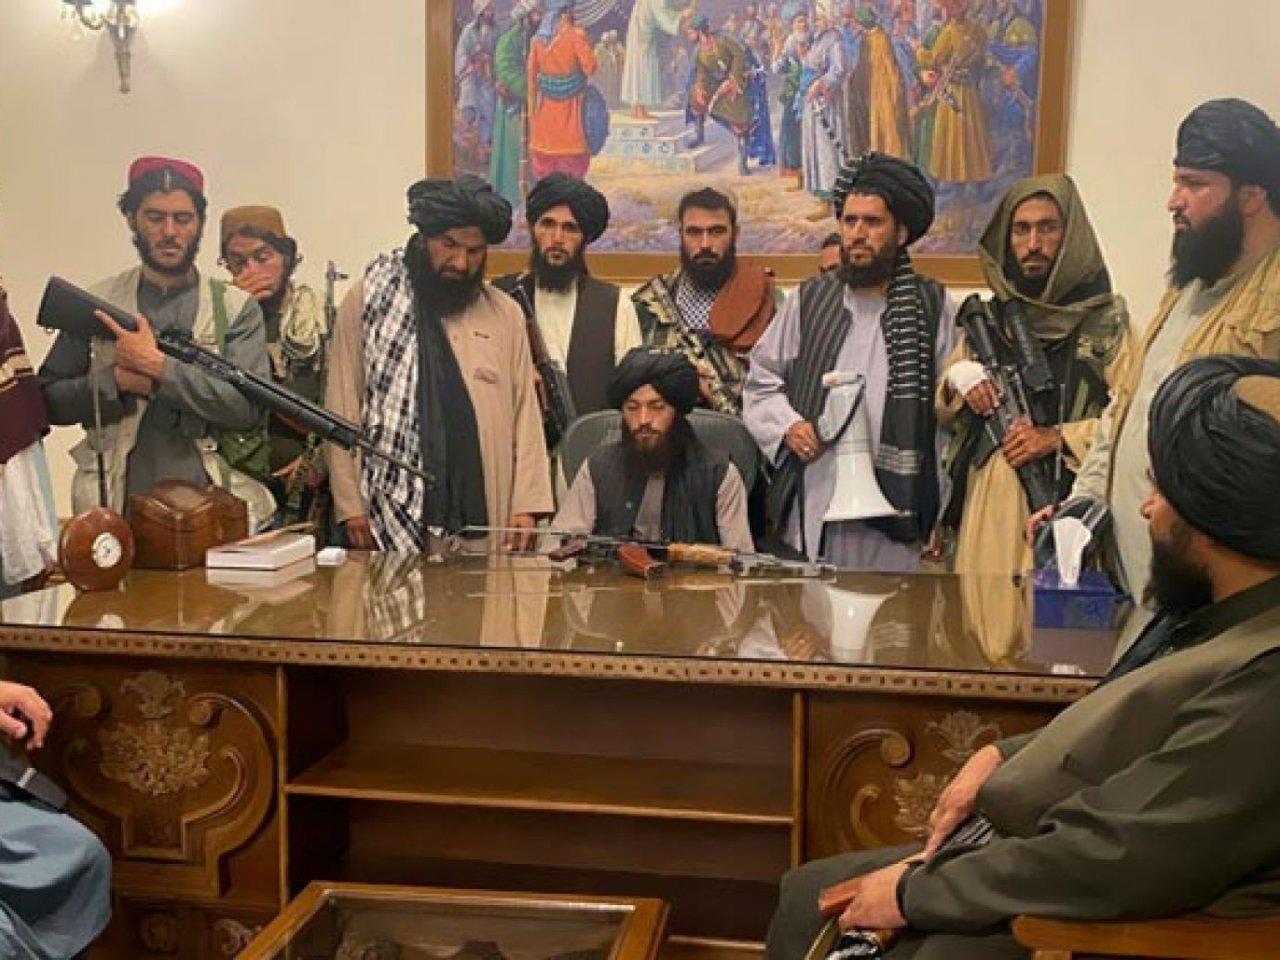 مفتي عُمان يهنئ الشعب الأفغاني بـ”الفتح المبين والنصر على الغزاة” بعد سيطرة طالبان